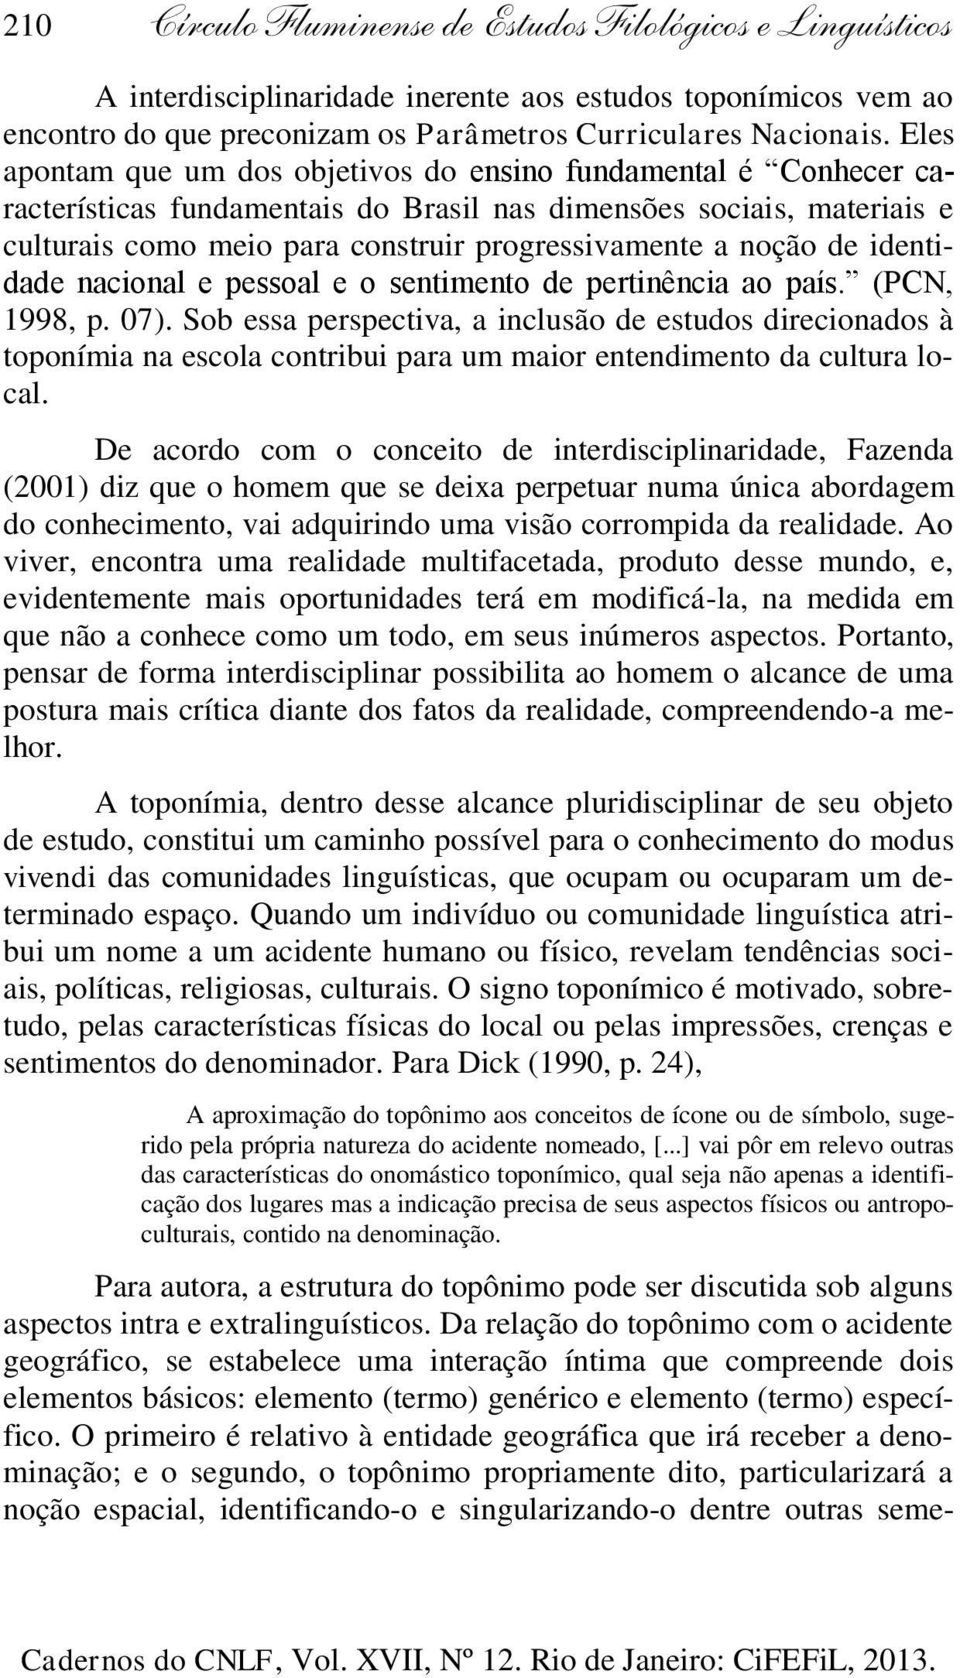 noção de identidade nacional e pessoal e o sentimento de pertinência ao país. (PCN, 1998, p. 07).